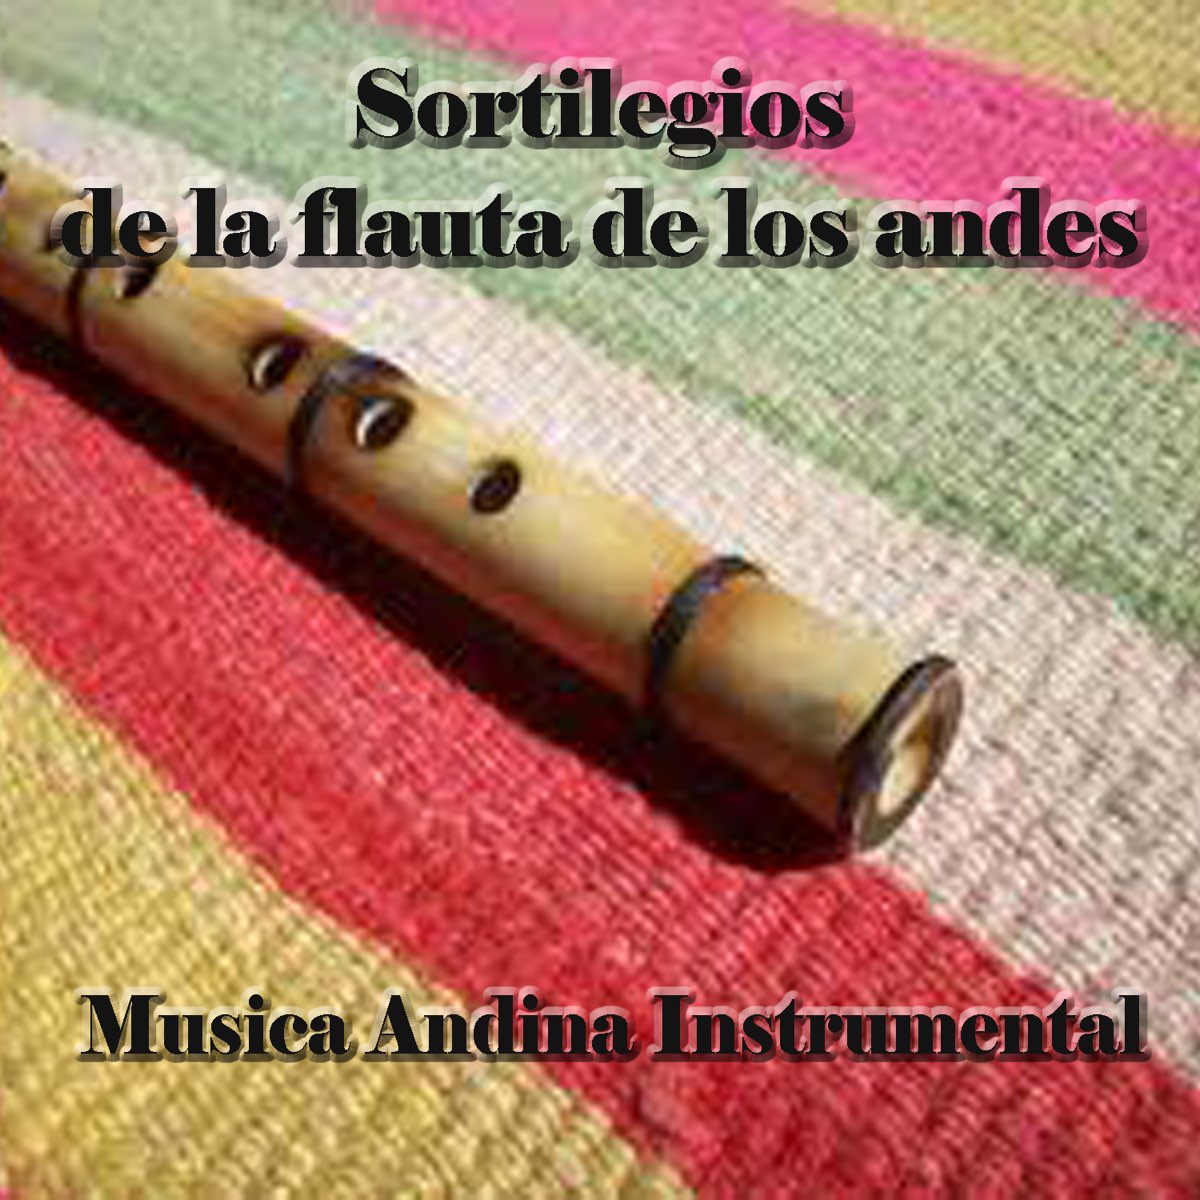 Sortilegios de la Flauta de los Andes - Música Andina Instrumental by Facio  Santillan on Apple Music